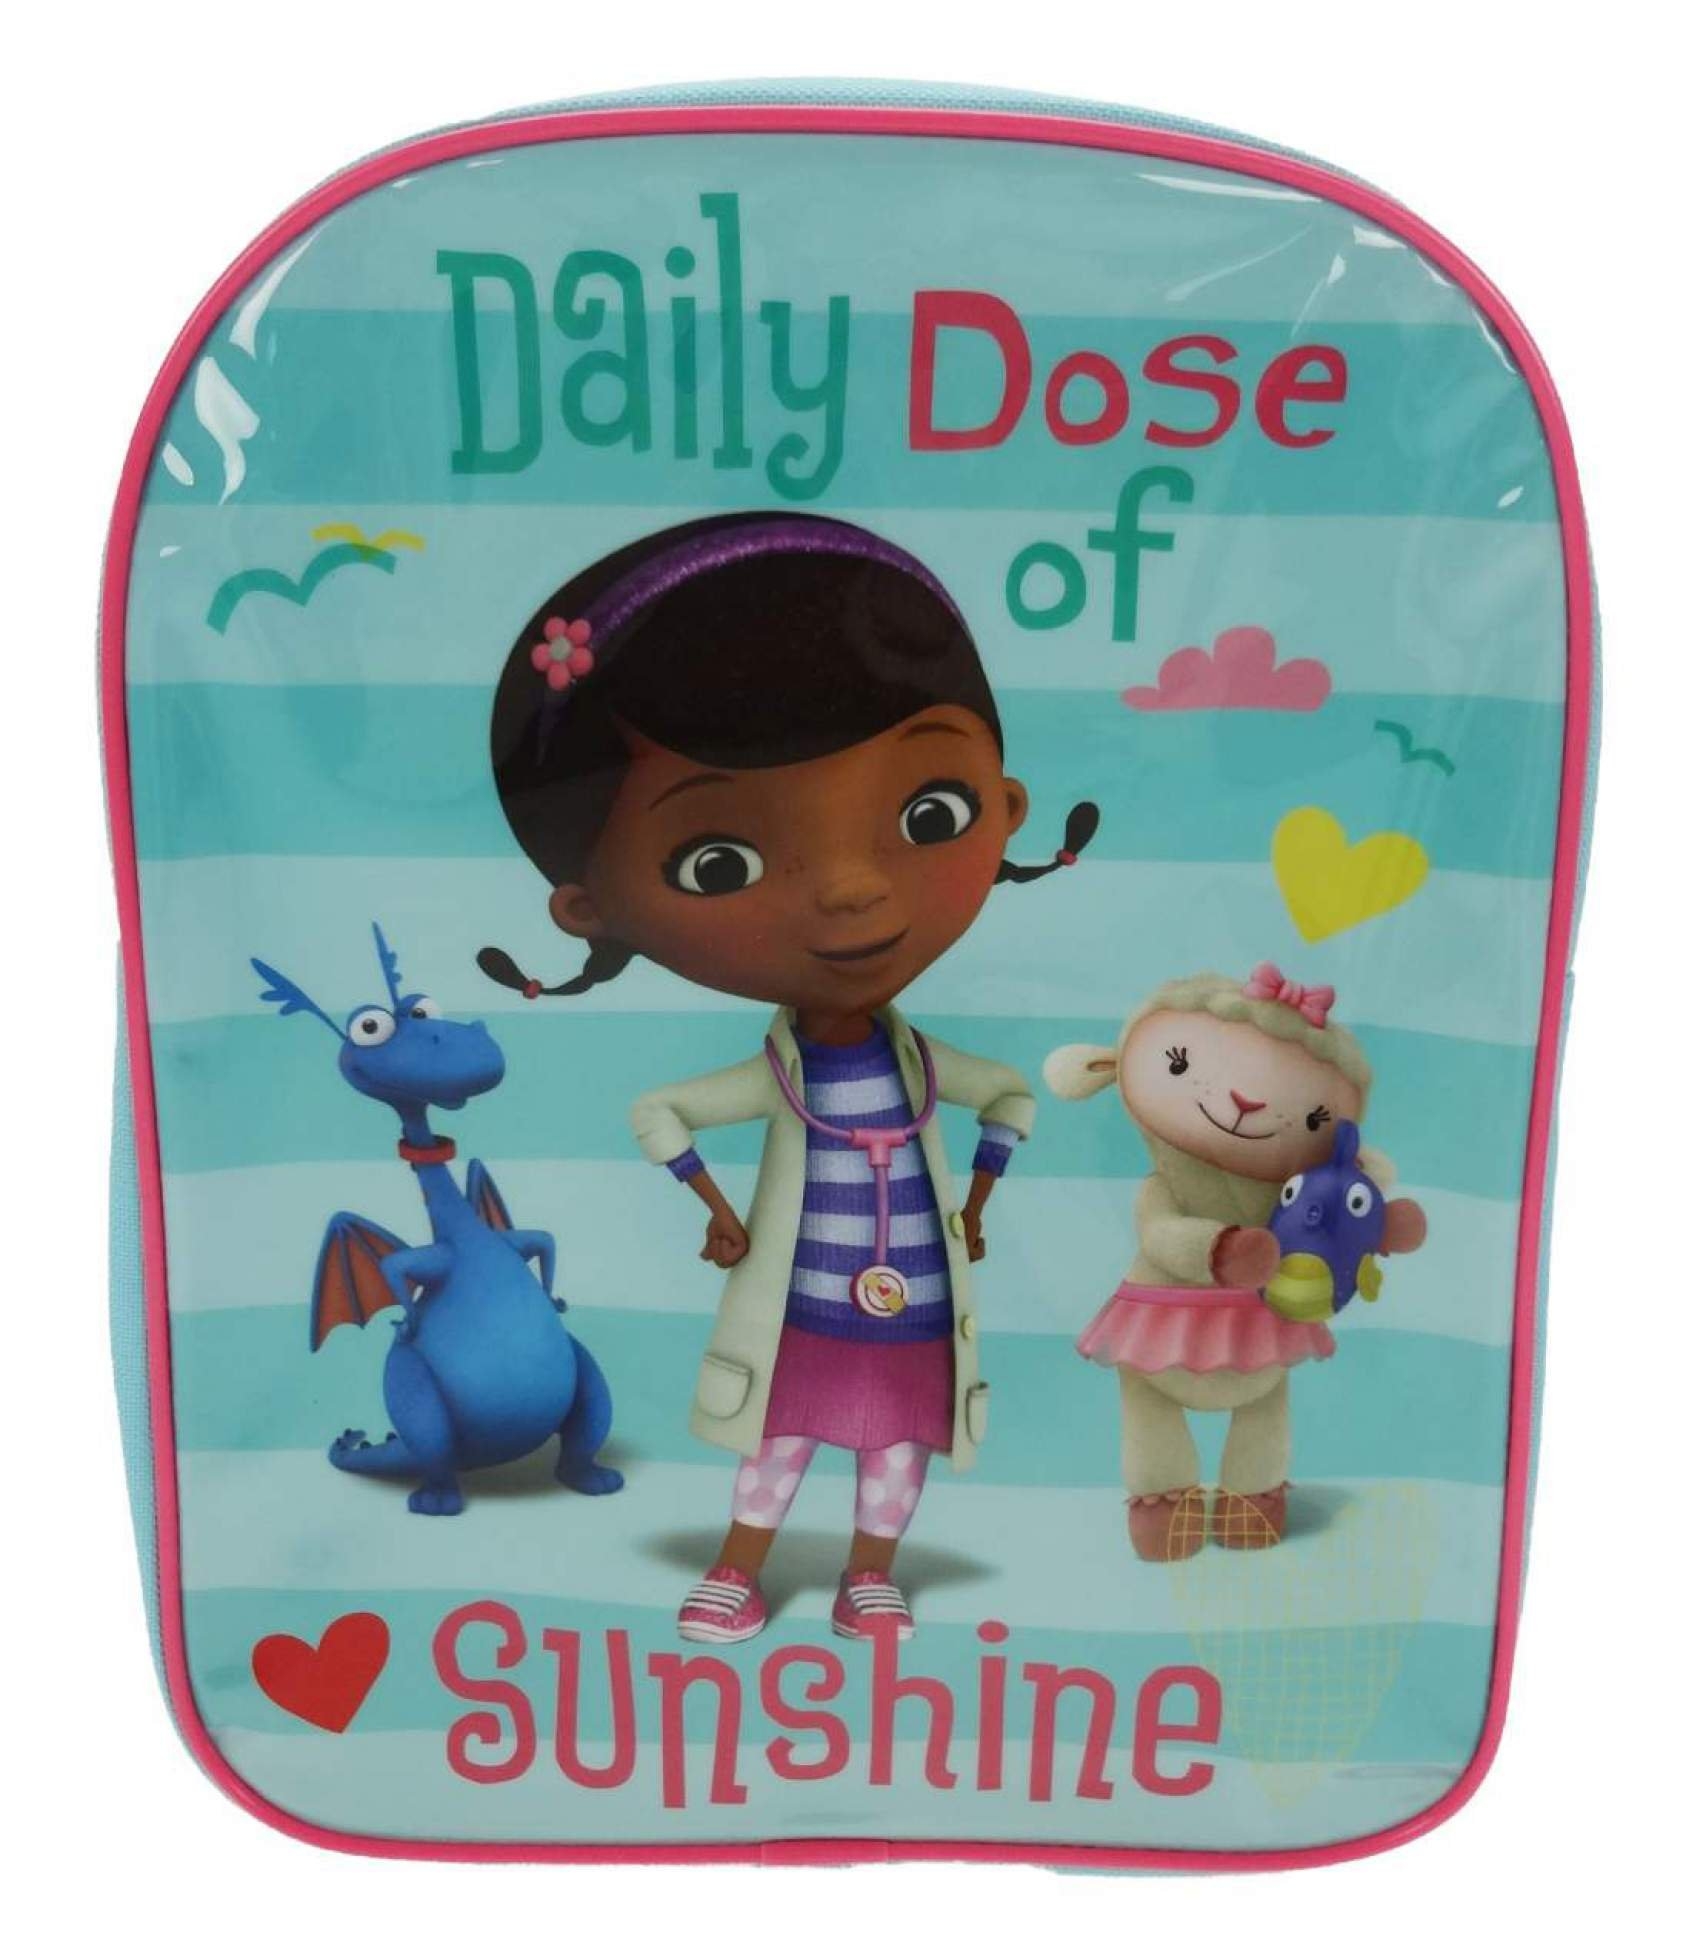 Disney Doc Mcstuffins Daily Dose of Sunshine School Bag Rucksack Backpack